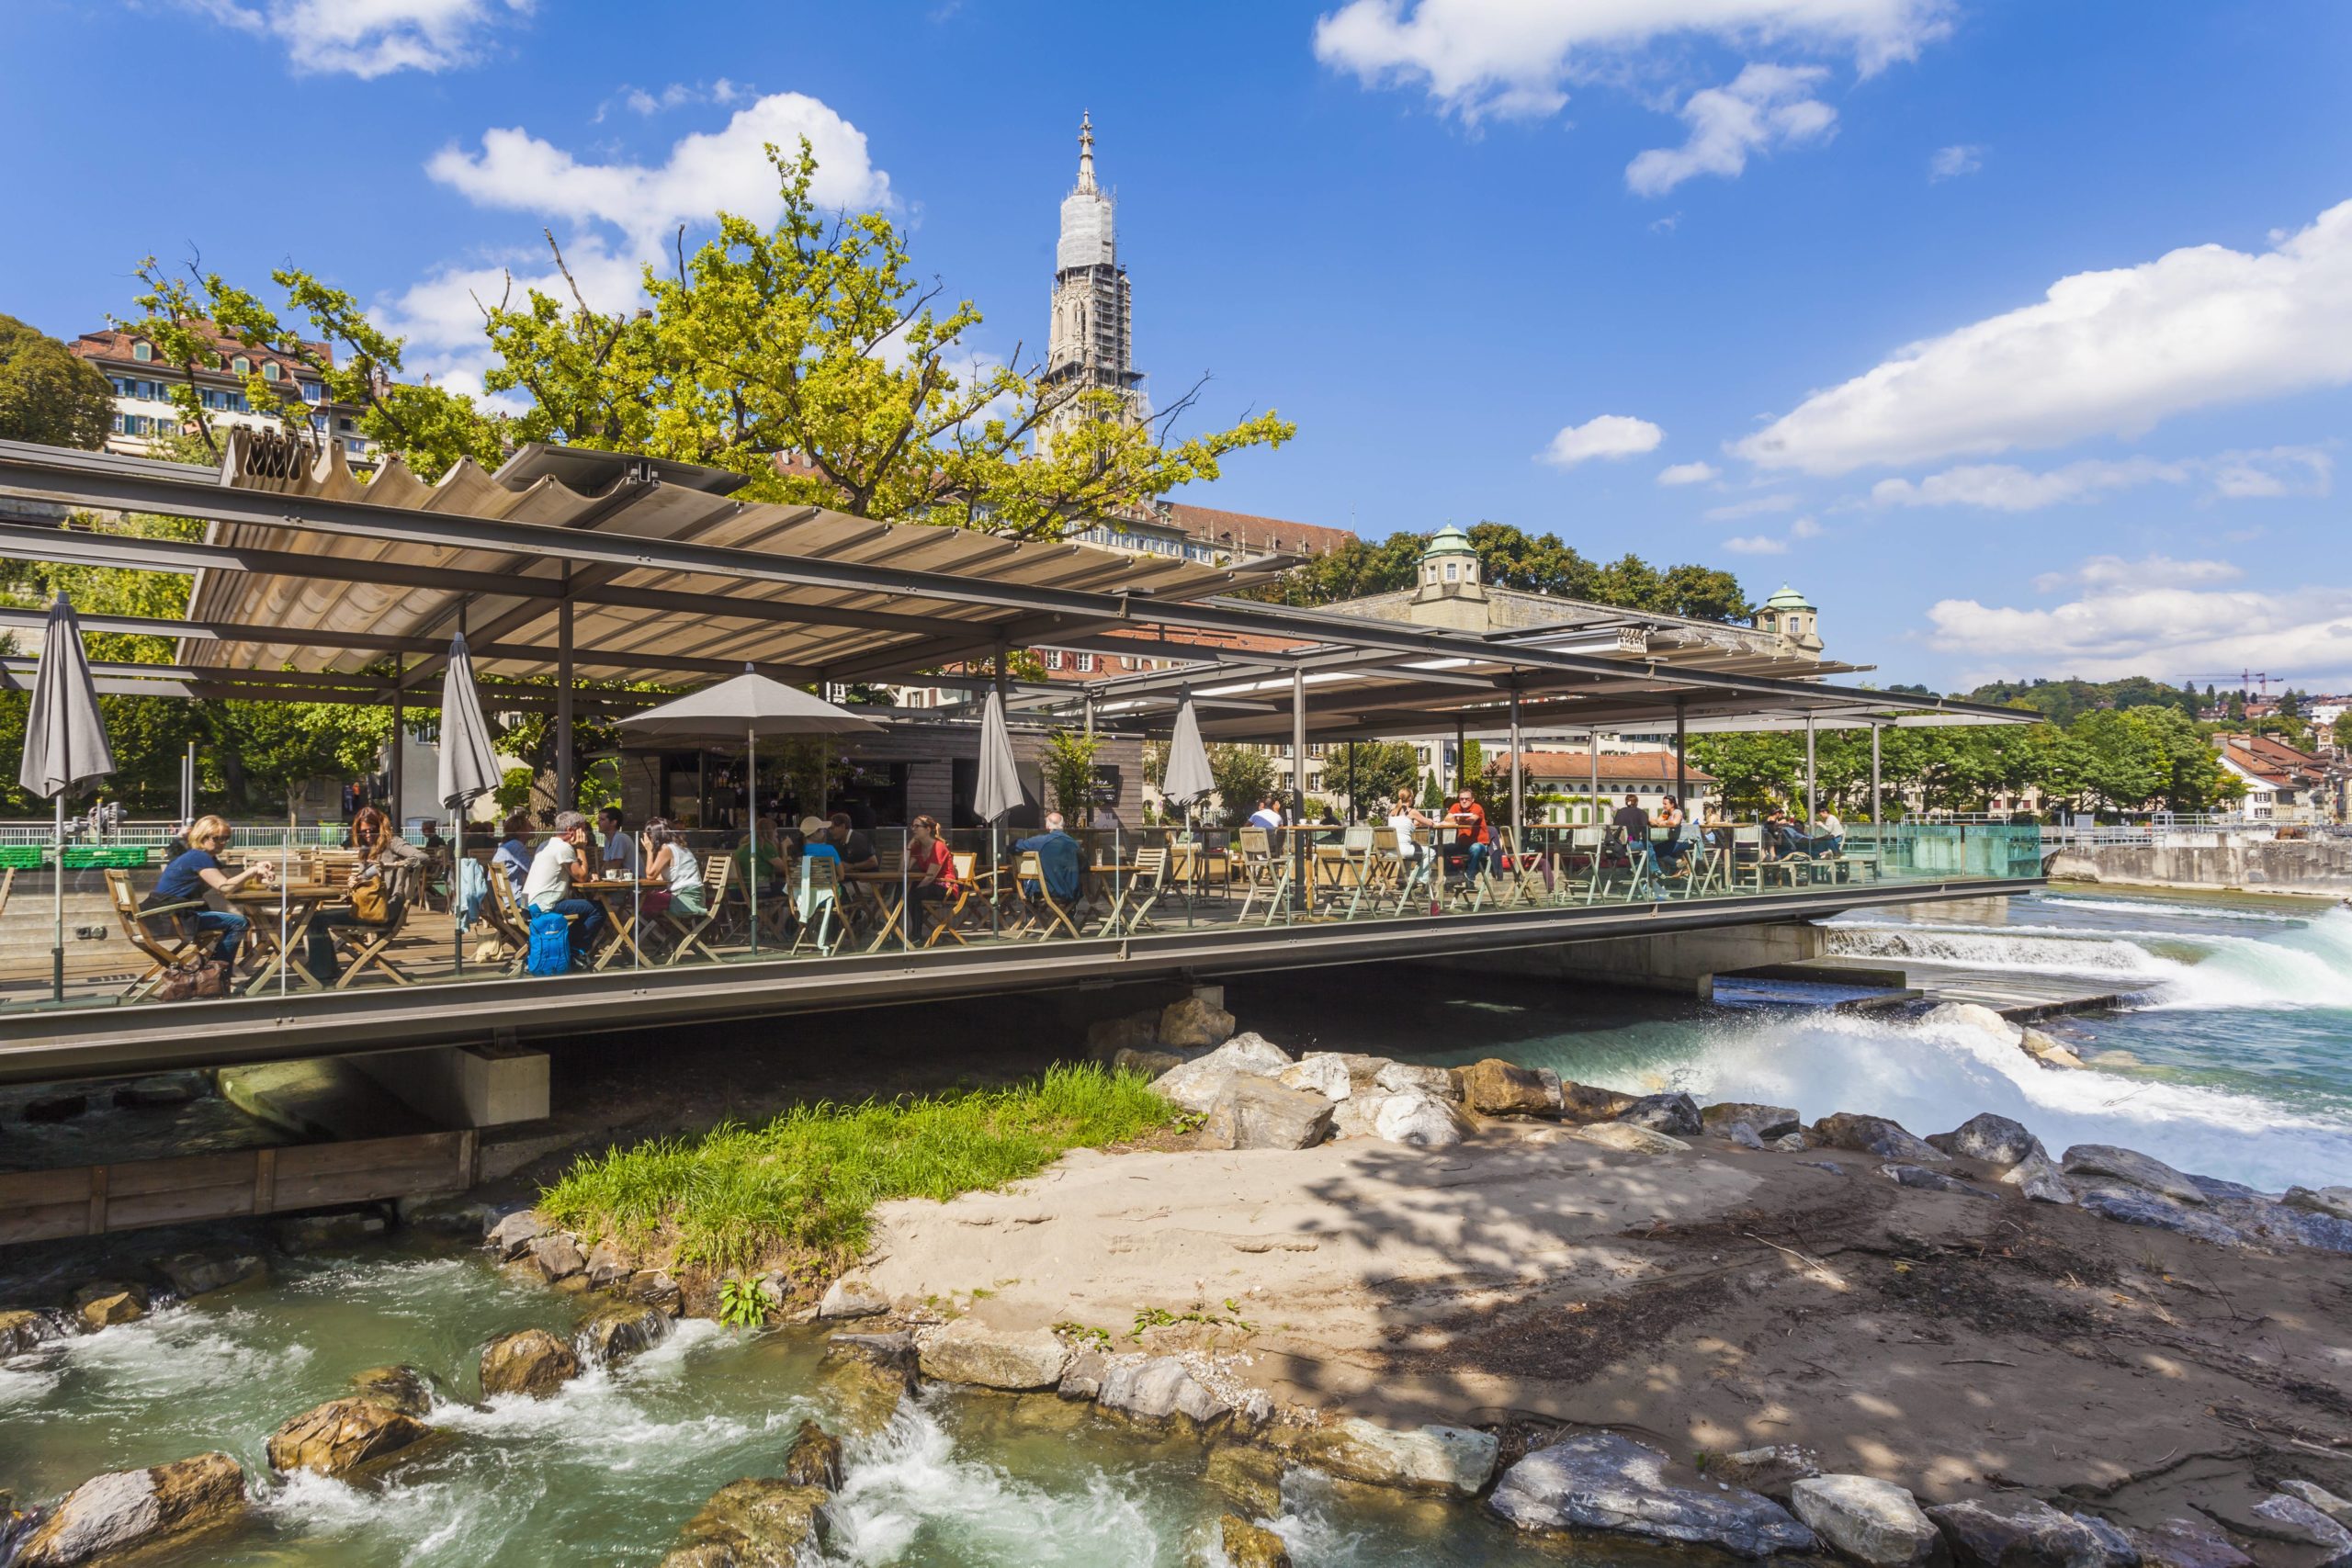 Corona In Bern dürfen die Restaurants trotz hoher Inzidenz draußen wieder Gäste bewirten. Geht es nach der Schweizer Regierung, dann wird der Sommer 2021 für die Bevölkerung fast wieder normal.